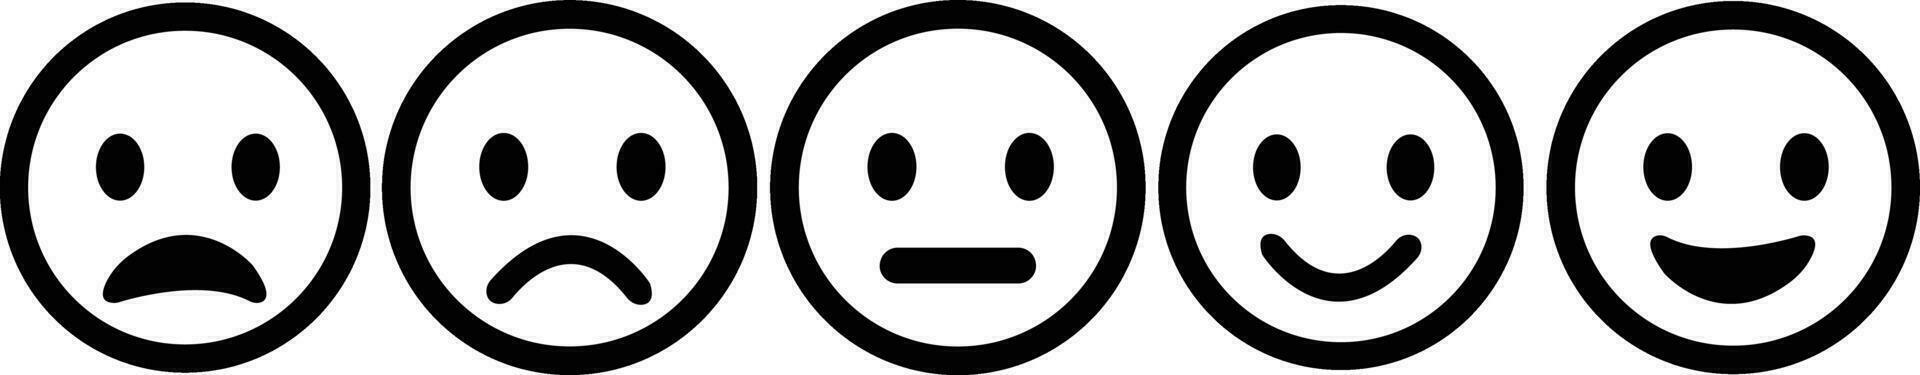 conjunto de diferente facial expresión emoji cara iconos contento y triste sensación caras emoticon . sonriente y Deprimido emociones mezclado expresiones un estado animico vector